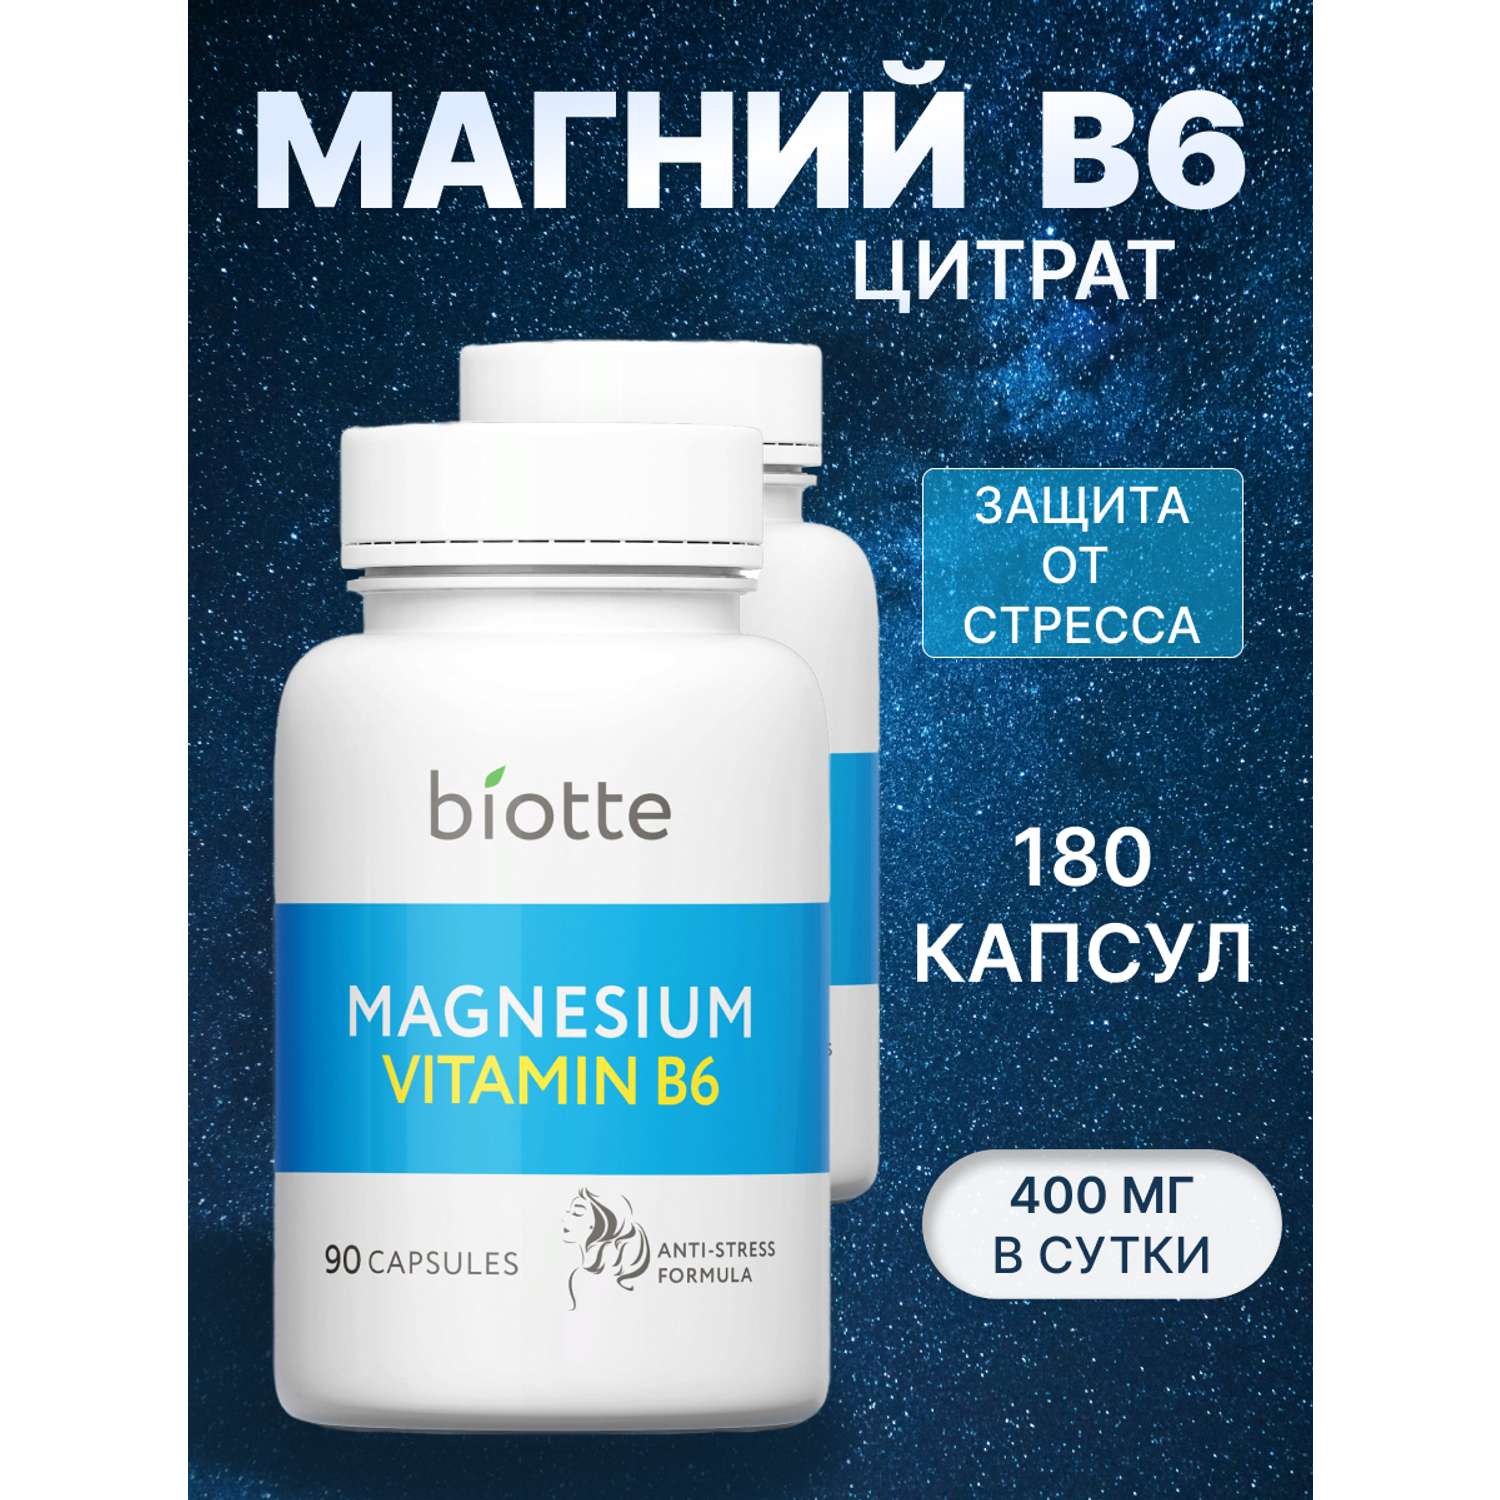 Магний с витамином В6 комплекс BIOTTE magnesium B6 для взрослых БАД 180 капсул - фото 1